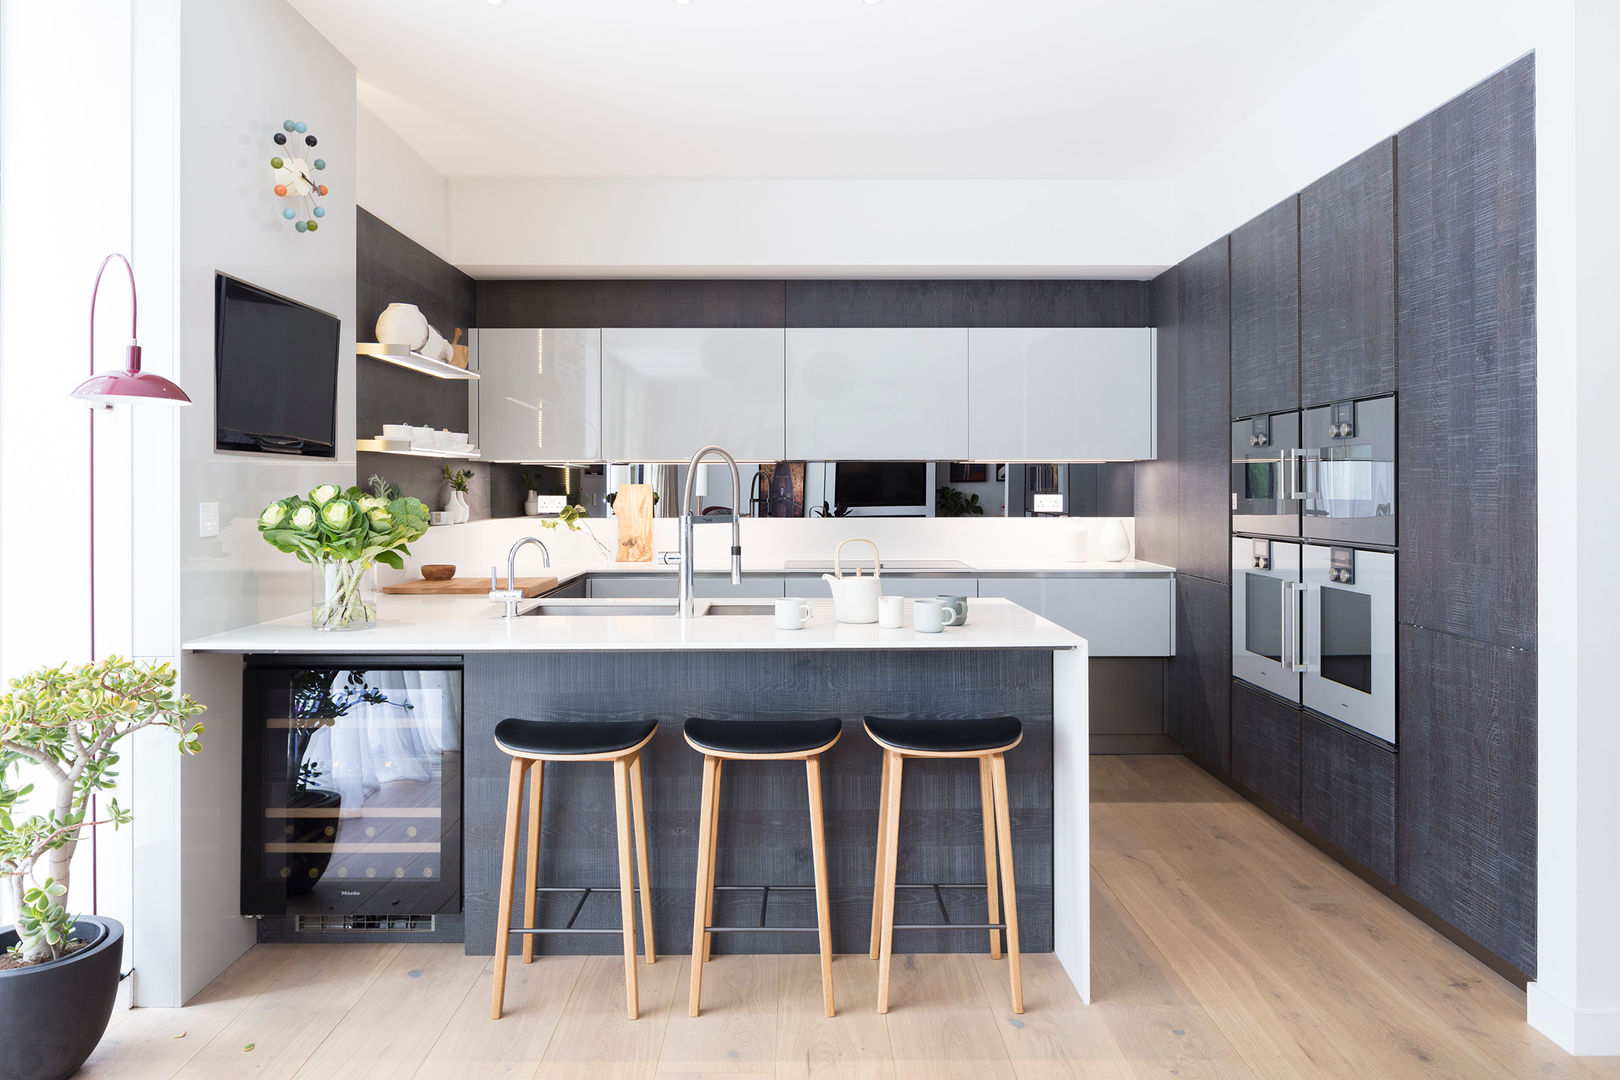 Modern New Home in Hampstead - kitchen bar Black and Milk | Interior Design | London غرفة السفرة kitchen bar,kitchen,bar stool,black kitchen